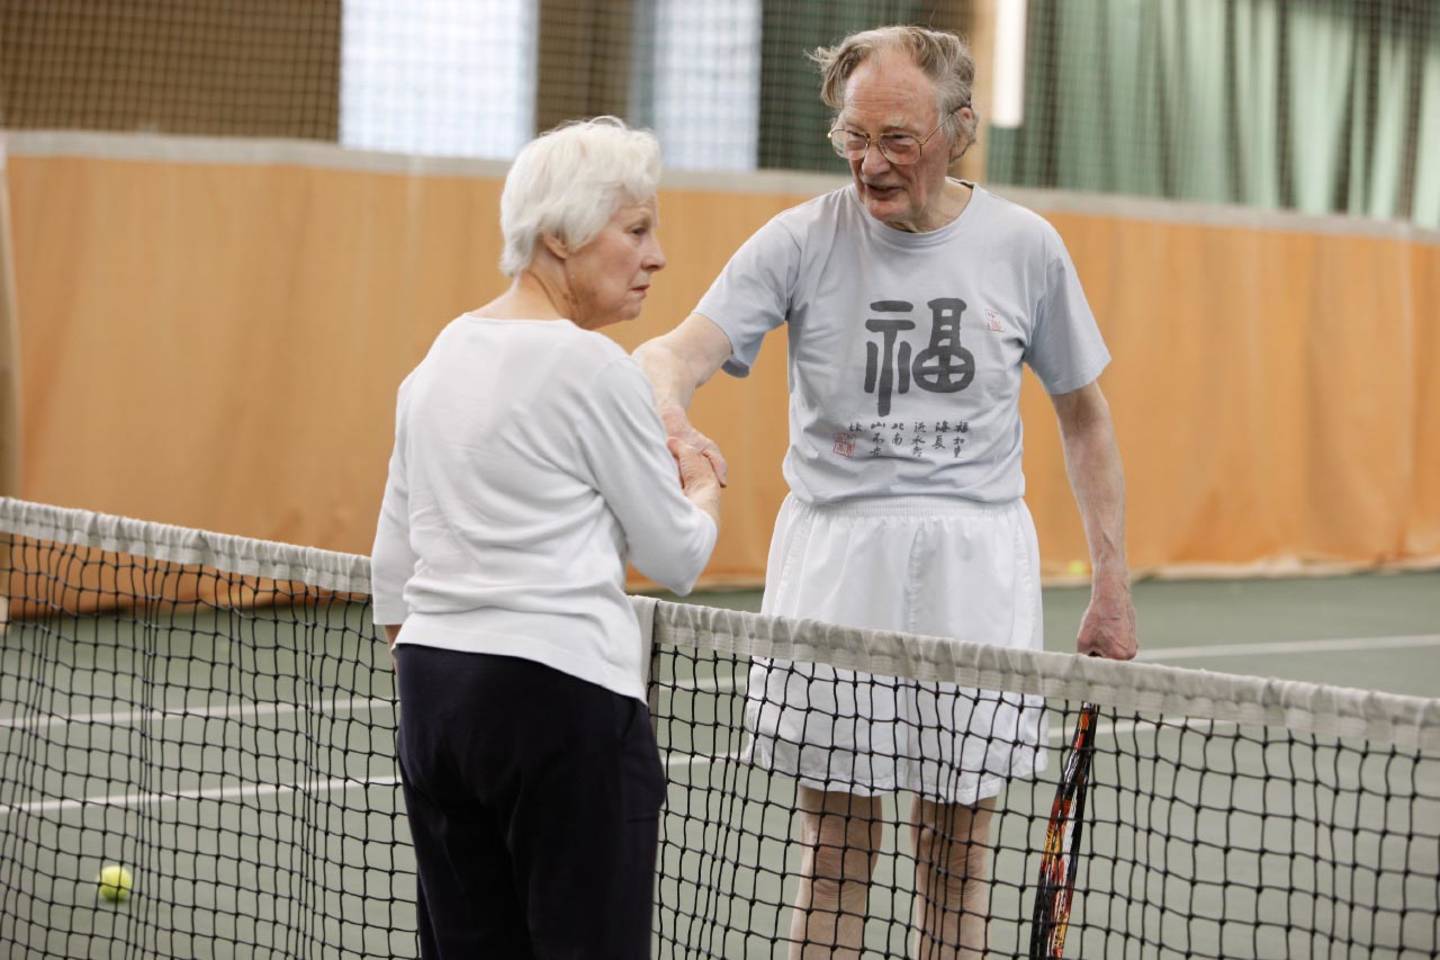 Older people playing tennis